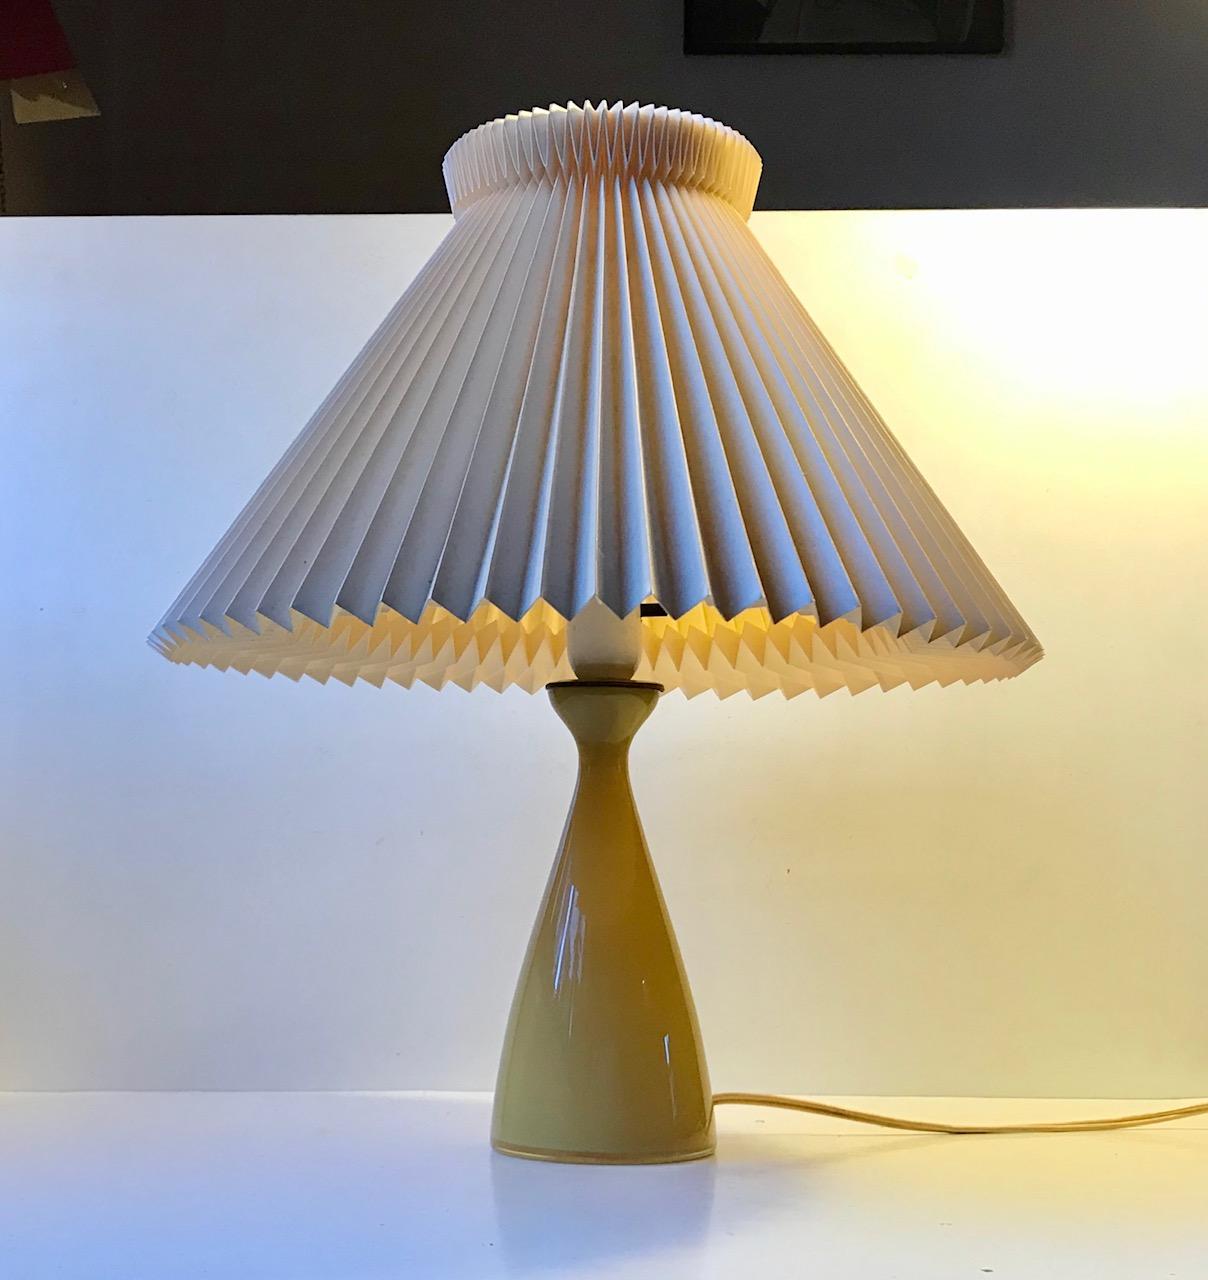 Rare lampe de table de forme organique en verre jaune miel. Conçu par le petit frère d'Arne Bang alias Jacob E. Bang au milieu et à la fin des années 1950. Fabriqué par Holmegaard/Kastrup au Danemark. L'abat-jour est un abat-jour modèle et n'est pas